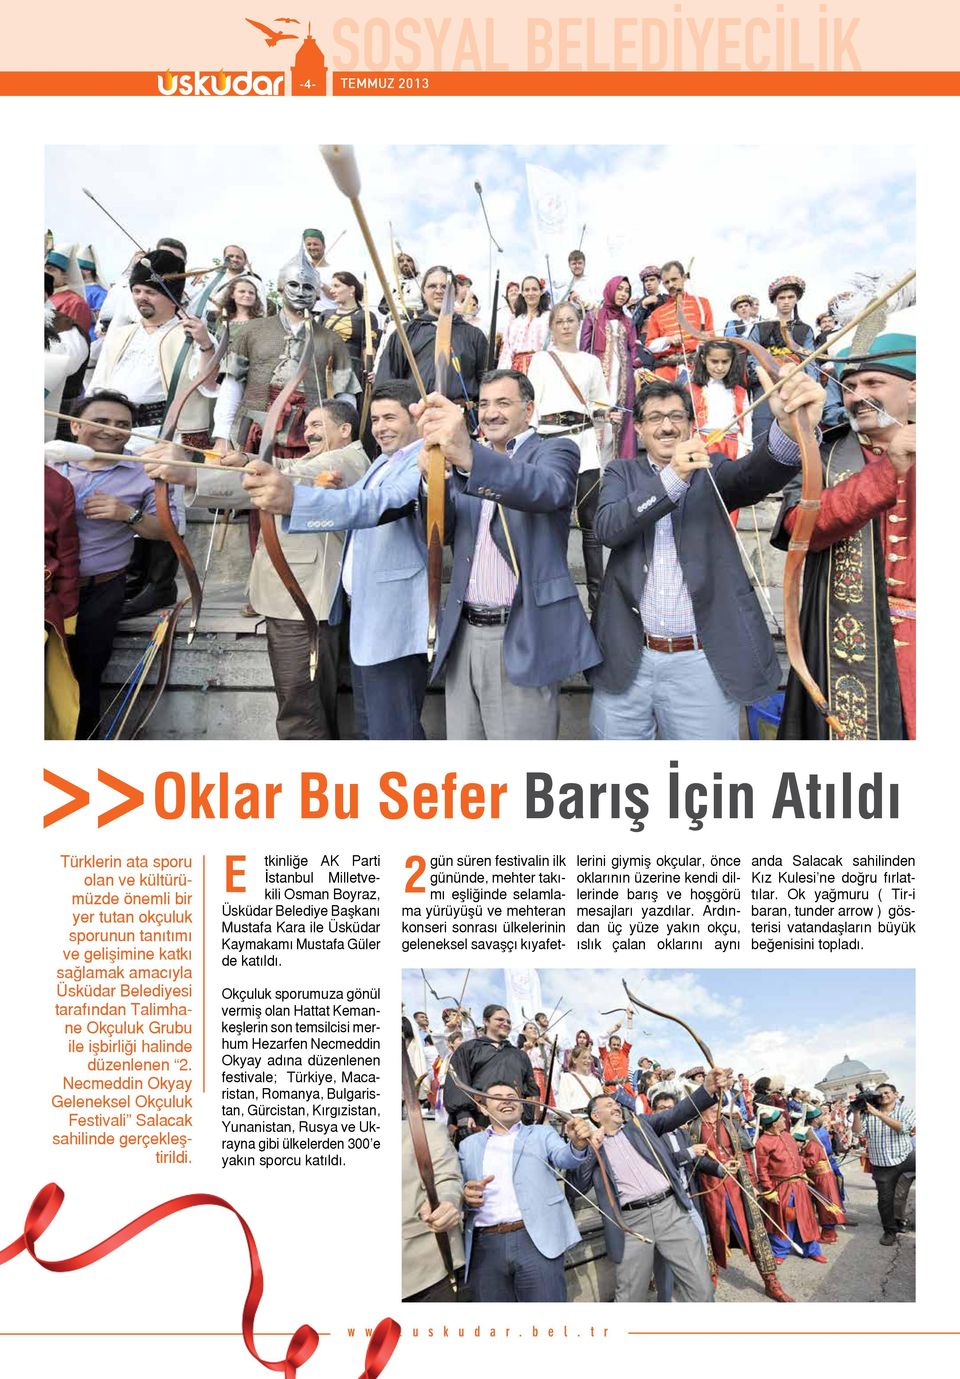 E tkinliğe AK Parti İstanbul Milletvekili Osman Boyraz, Üsküdar Belediye Başkanı Mustafa Kara ile Üsküdar Kaymakamı Mustafa Güler de katıldı.